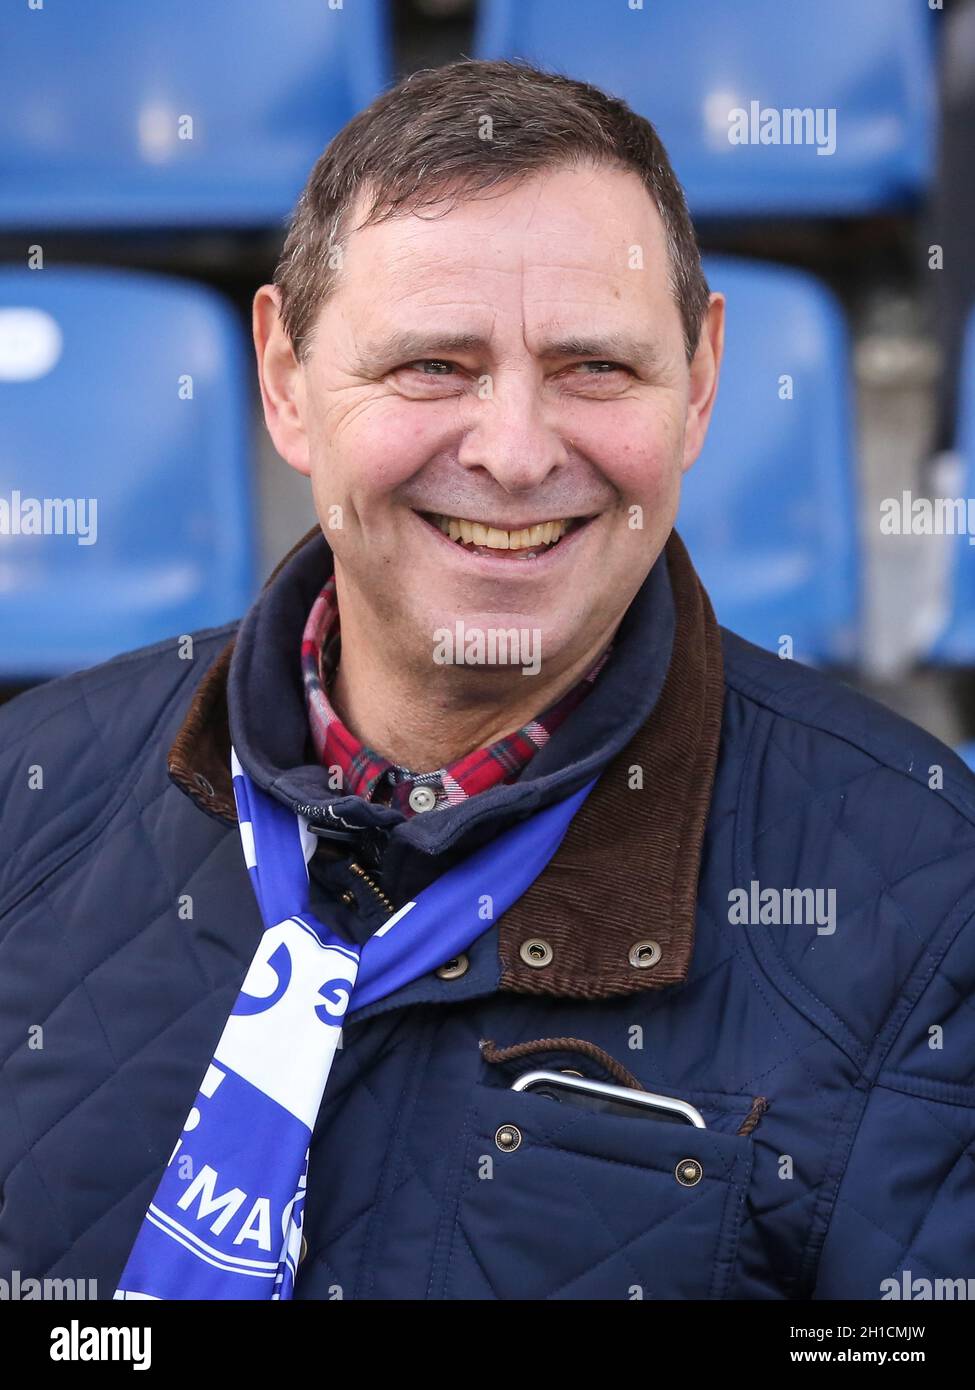 ehemaliger Fußballschiedsrichter Bernd Heynemann Stock Photo